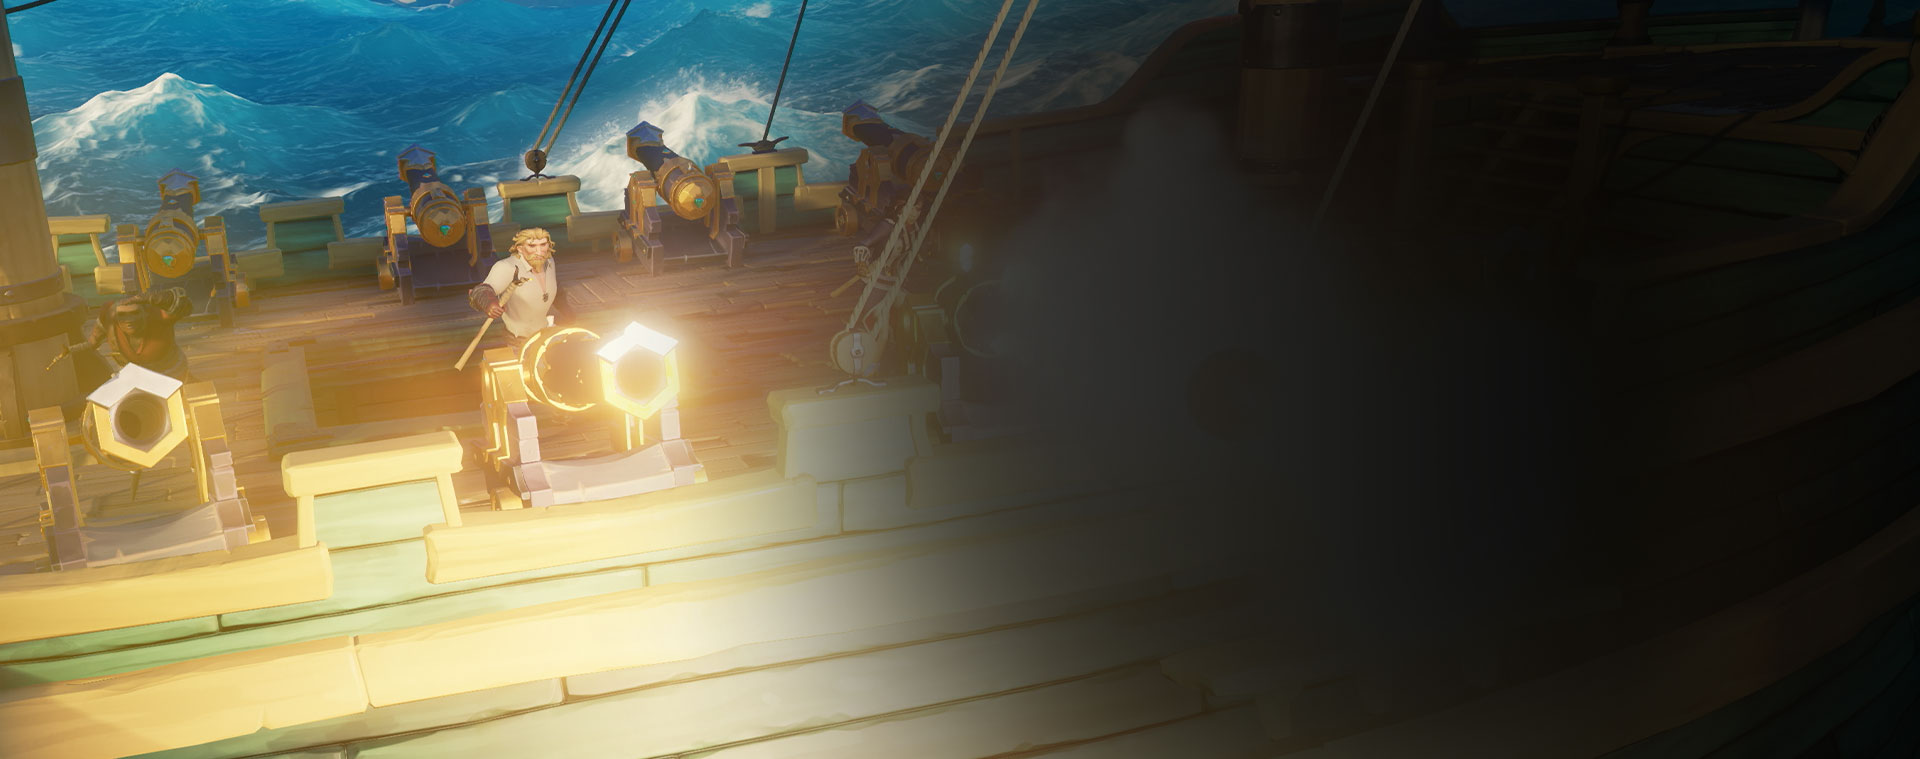 Χαρακτήρες από το Sea of Thieves που πυροβολούν με κανόνια από ένα πλοίο